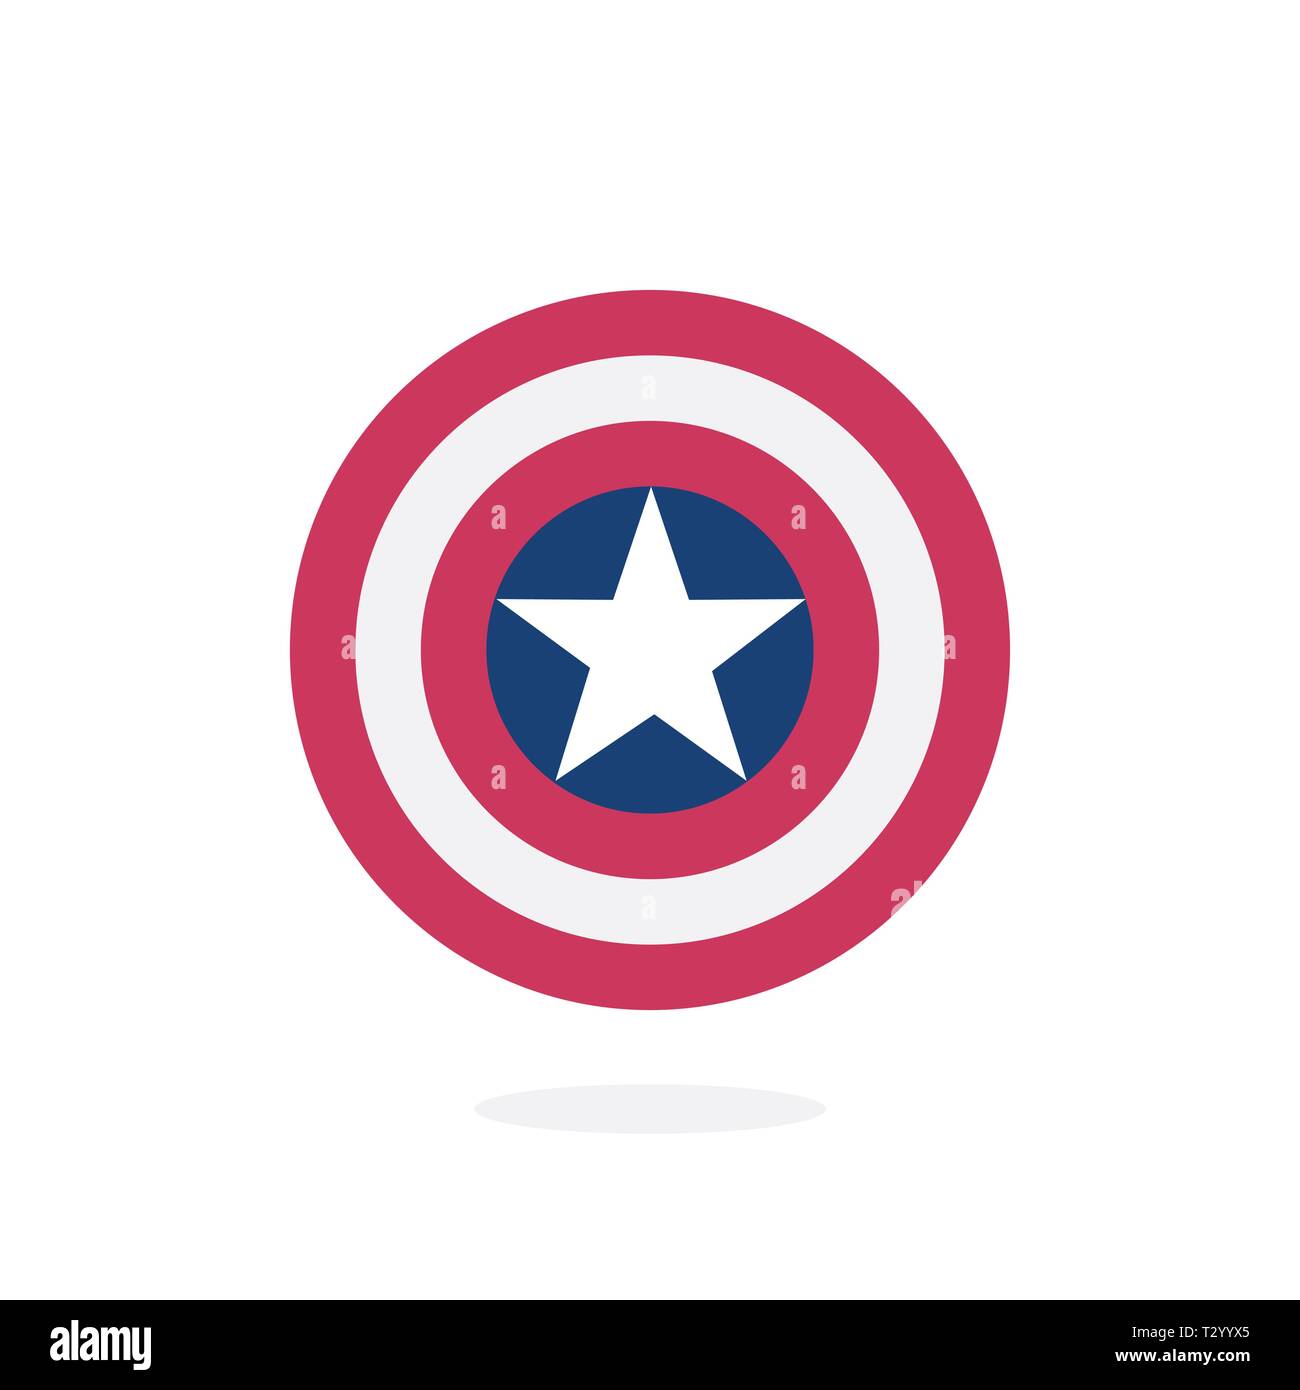 Captain america shield Banque d'images vectorielles - Alamy